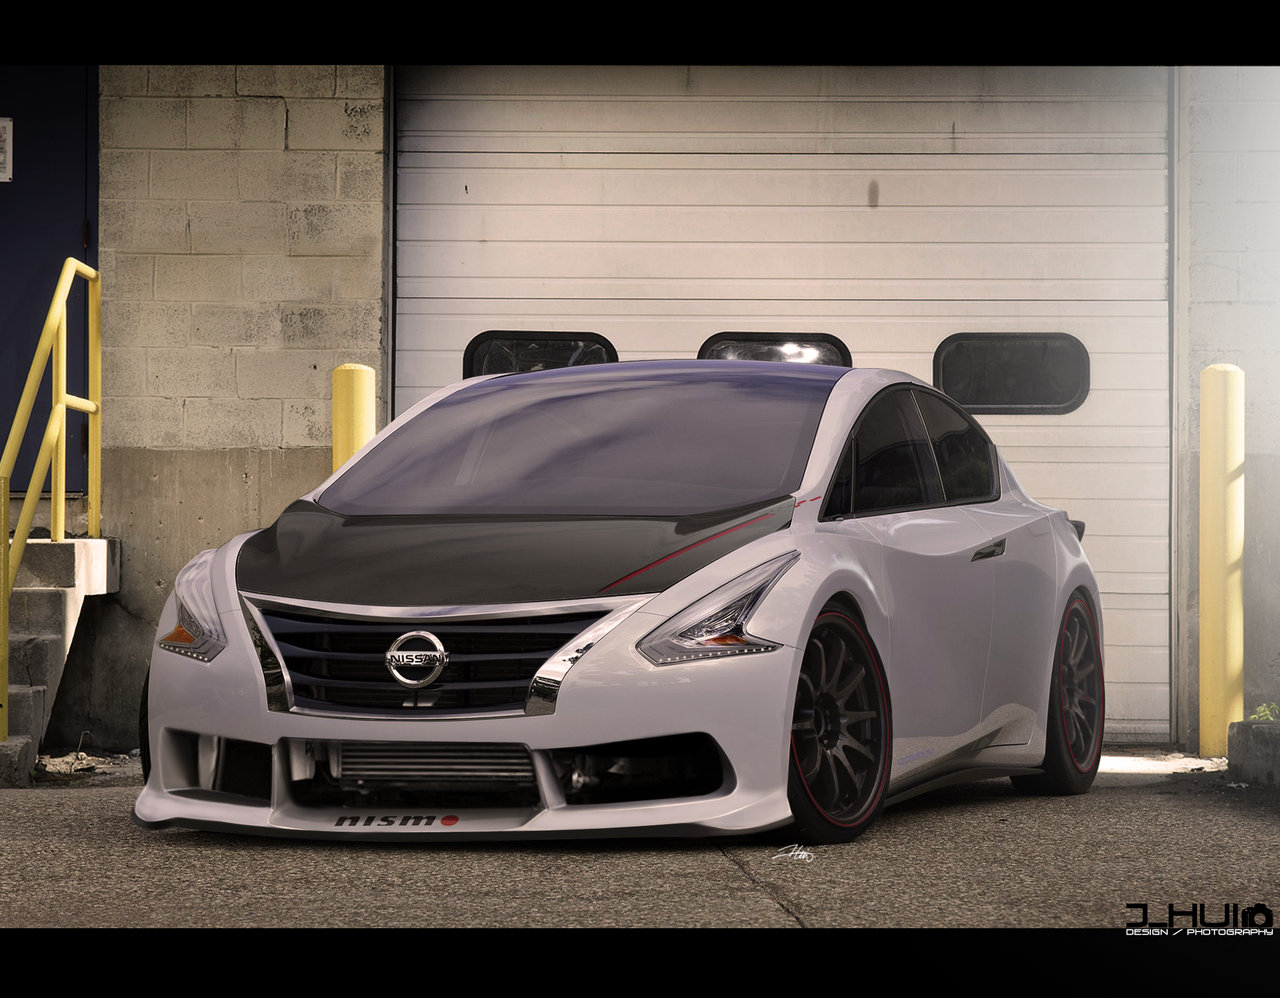 Nissan Ellure Concept Pics, Vehicles Collection